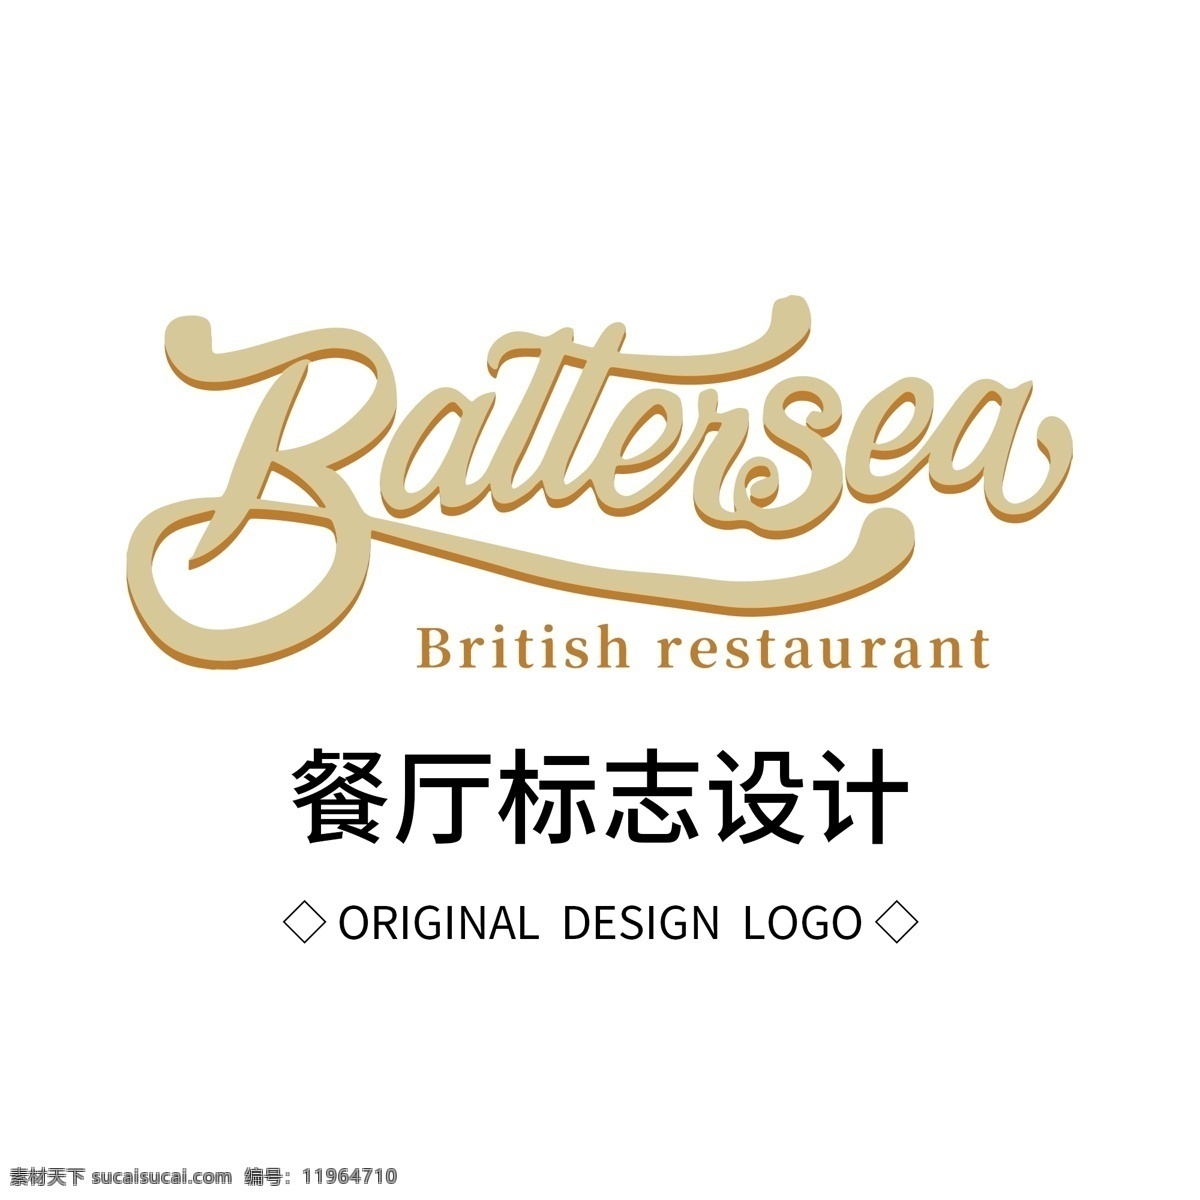 原创 餐厅 标志设计 logo 创意 简约 标识 标志 可商用 广告 传媒 字体设计 元素 企业logo 公司logo 徽标 饭店 字母 英文 餐厅logo 字母logo